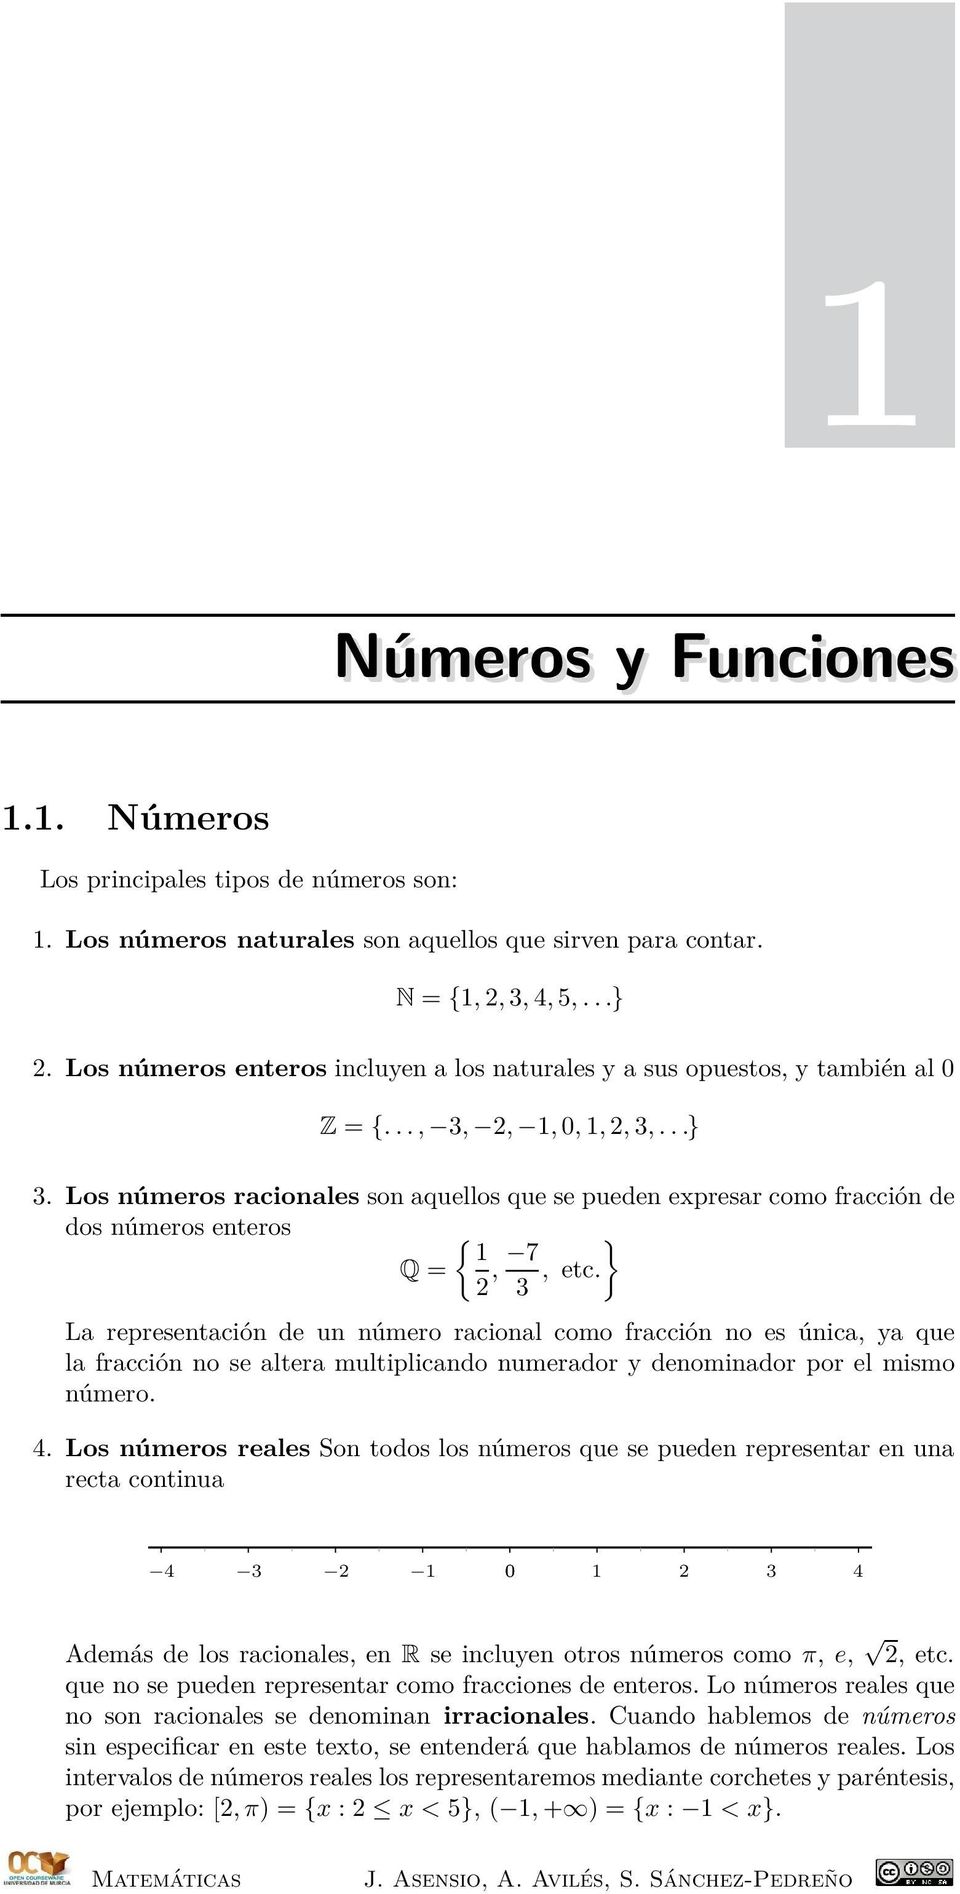 Los números racionales son aquellos que se pueden expresar como fracción de dos números enteros { Q =, 7 }, etc.